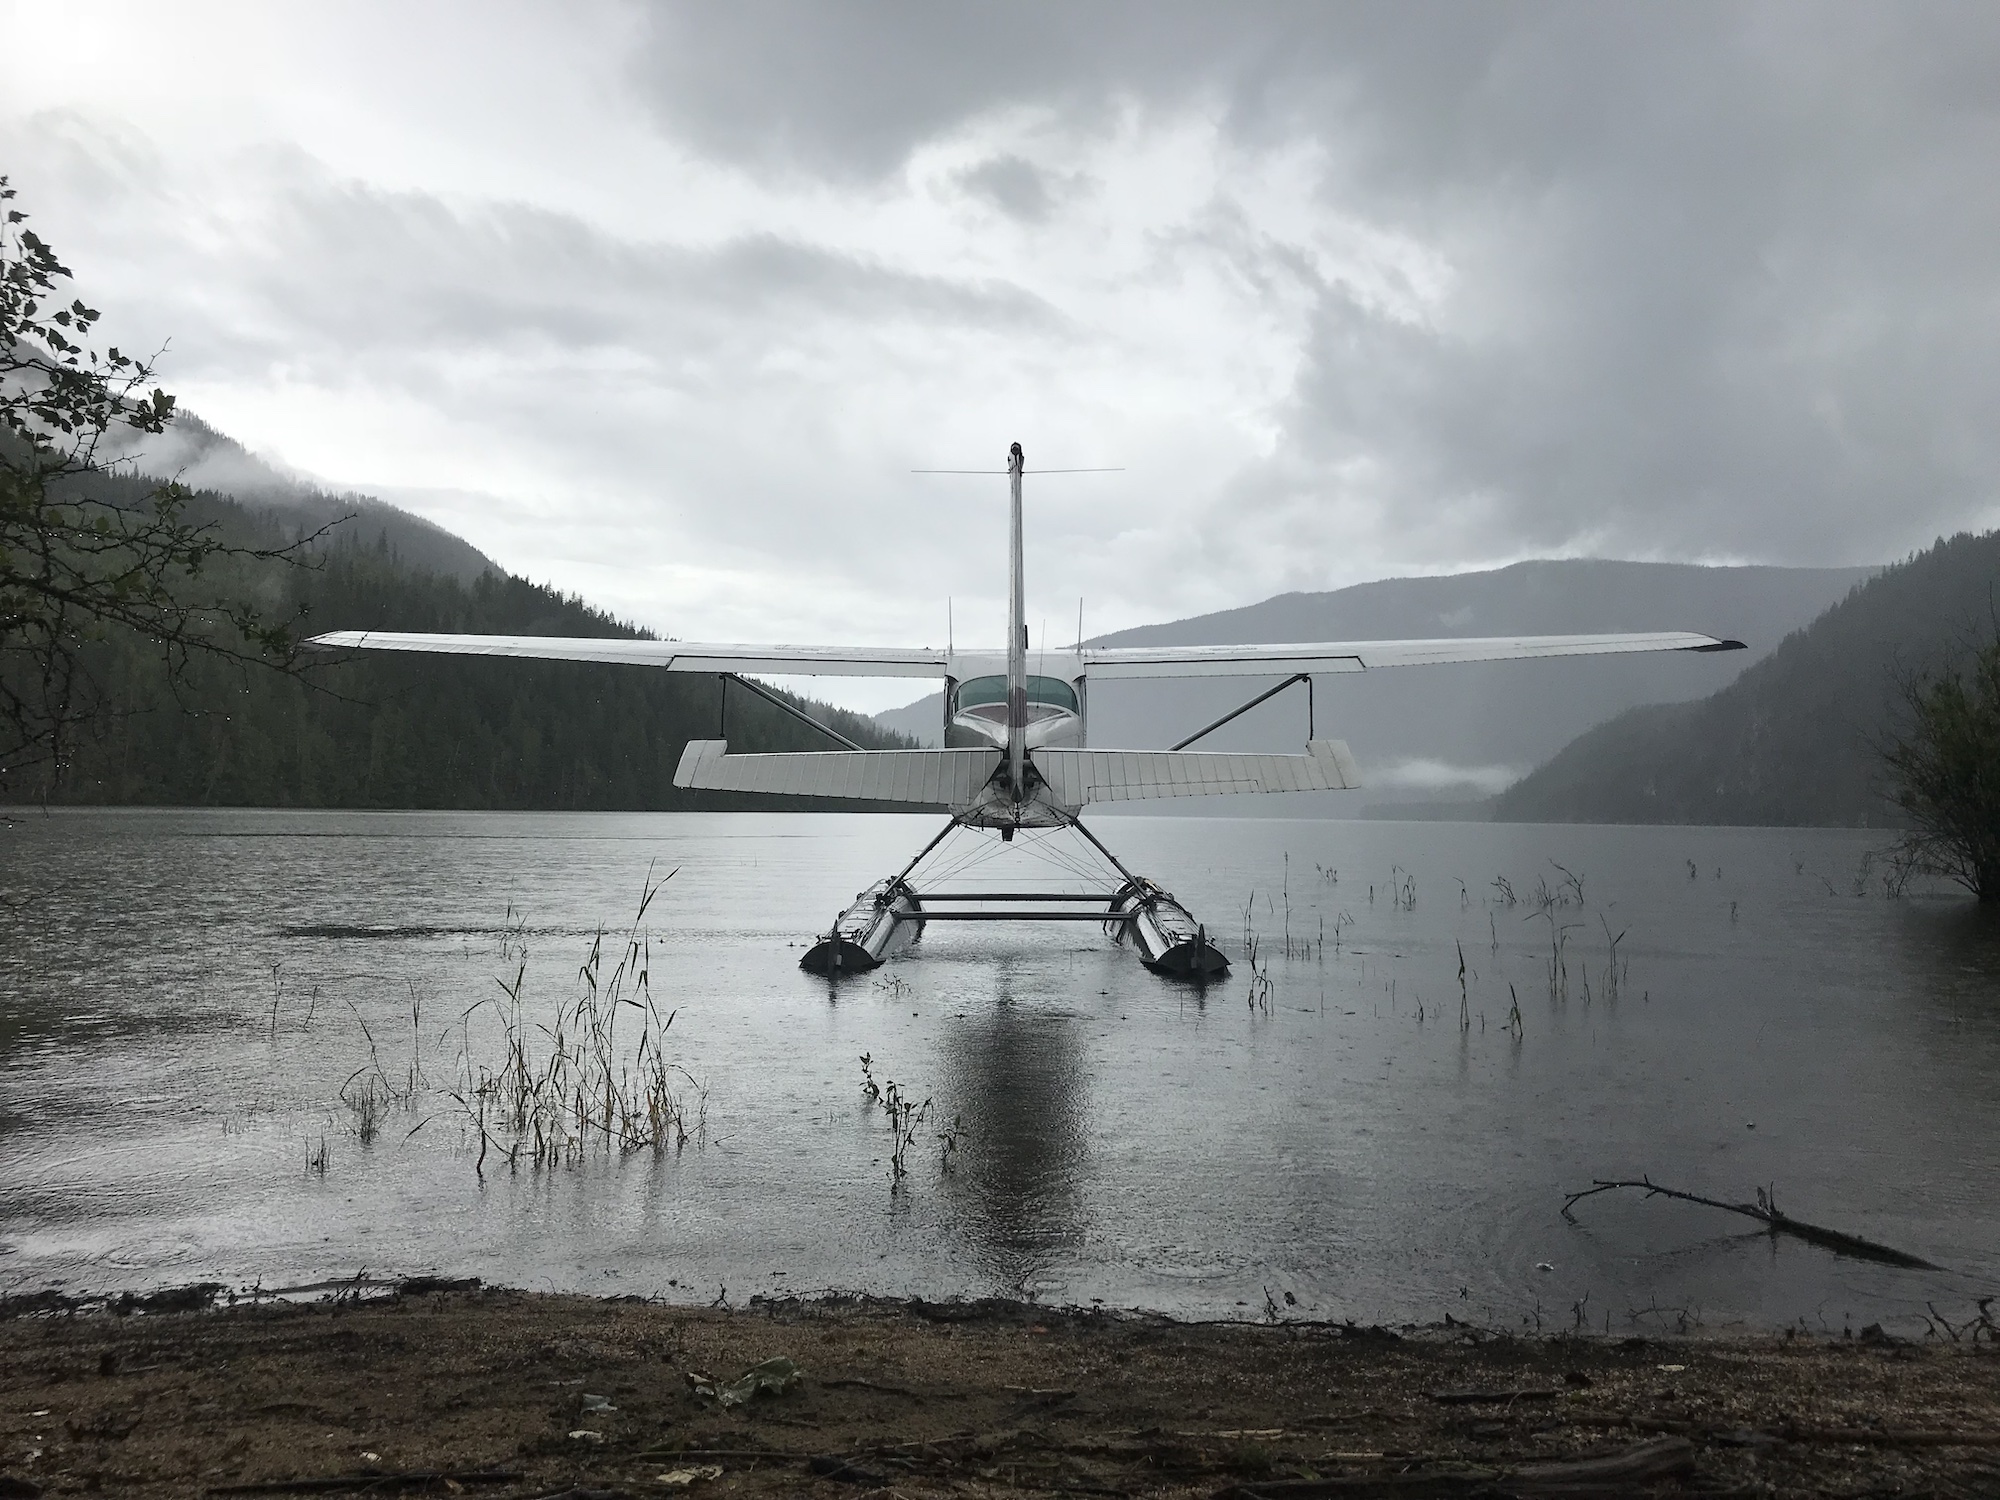 floatplane on lake on overcast day